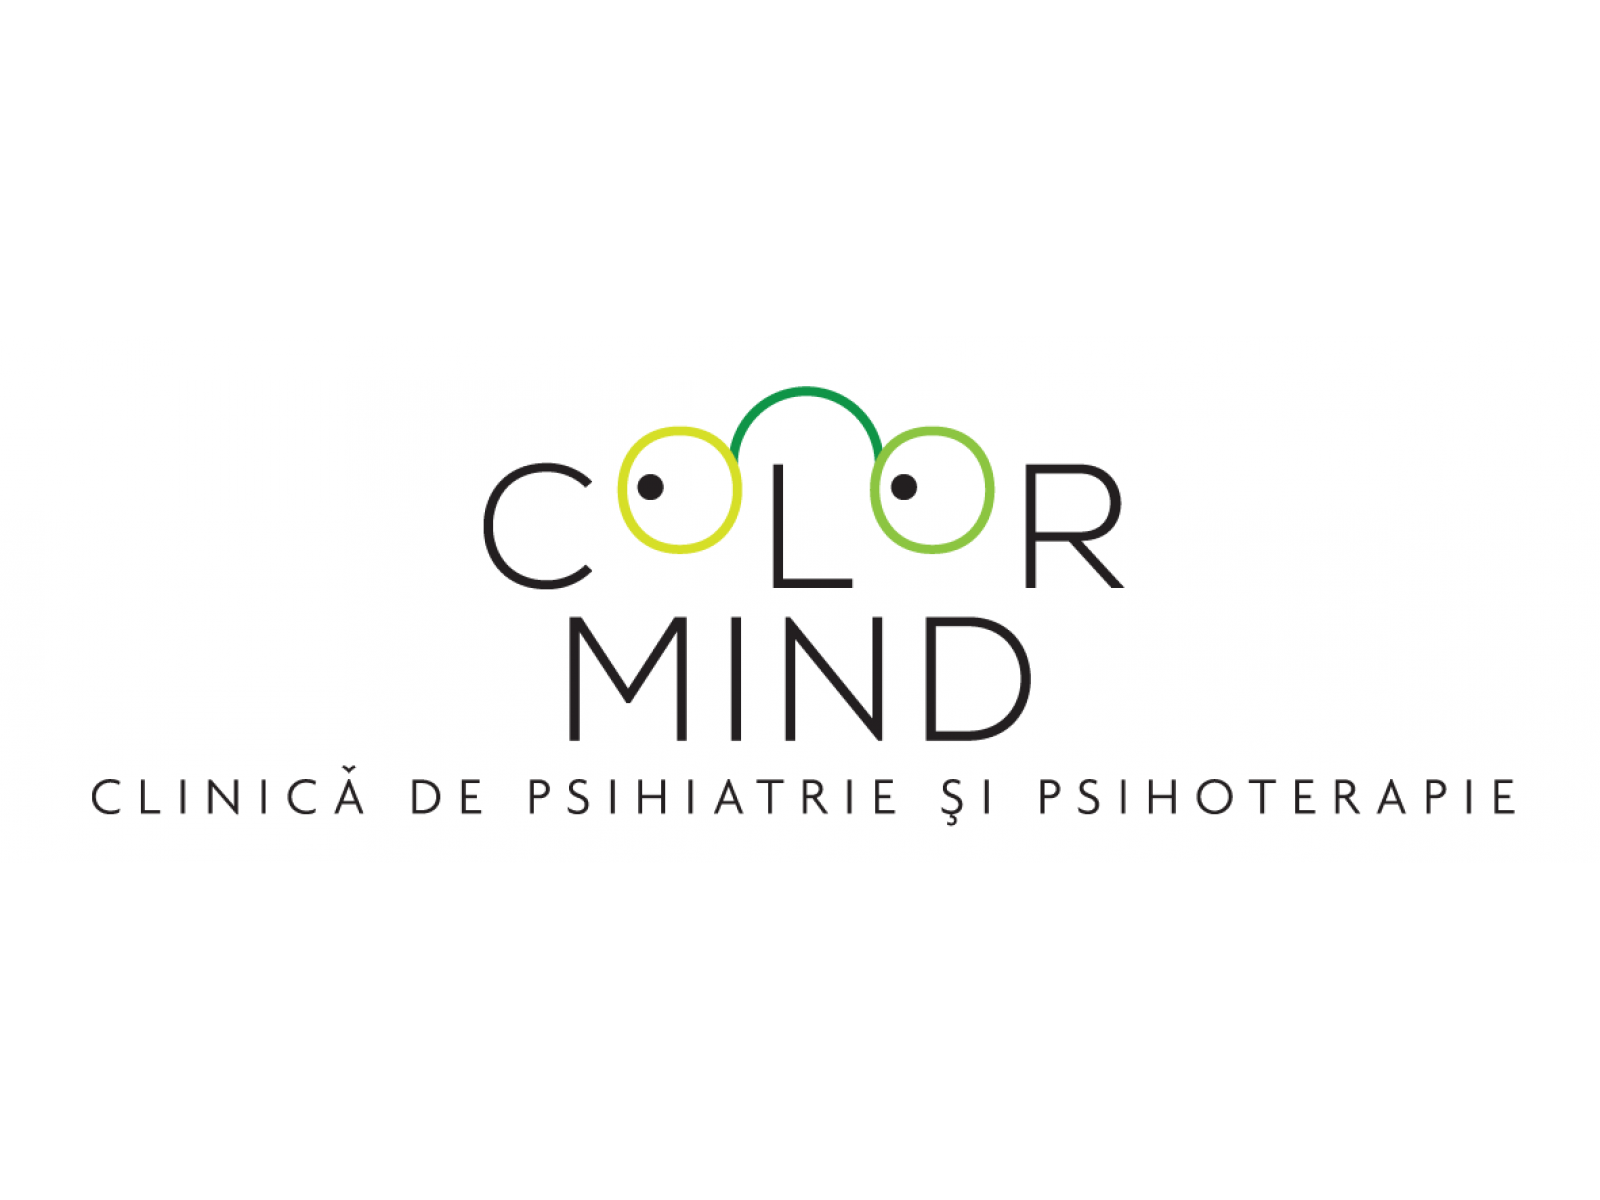 Color Mind - color_mind_-_logo-01.png